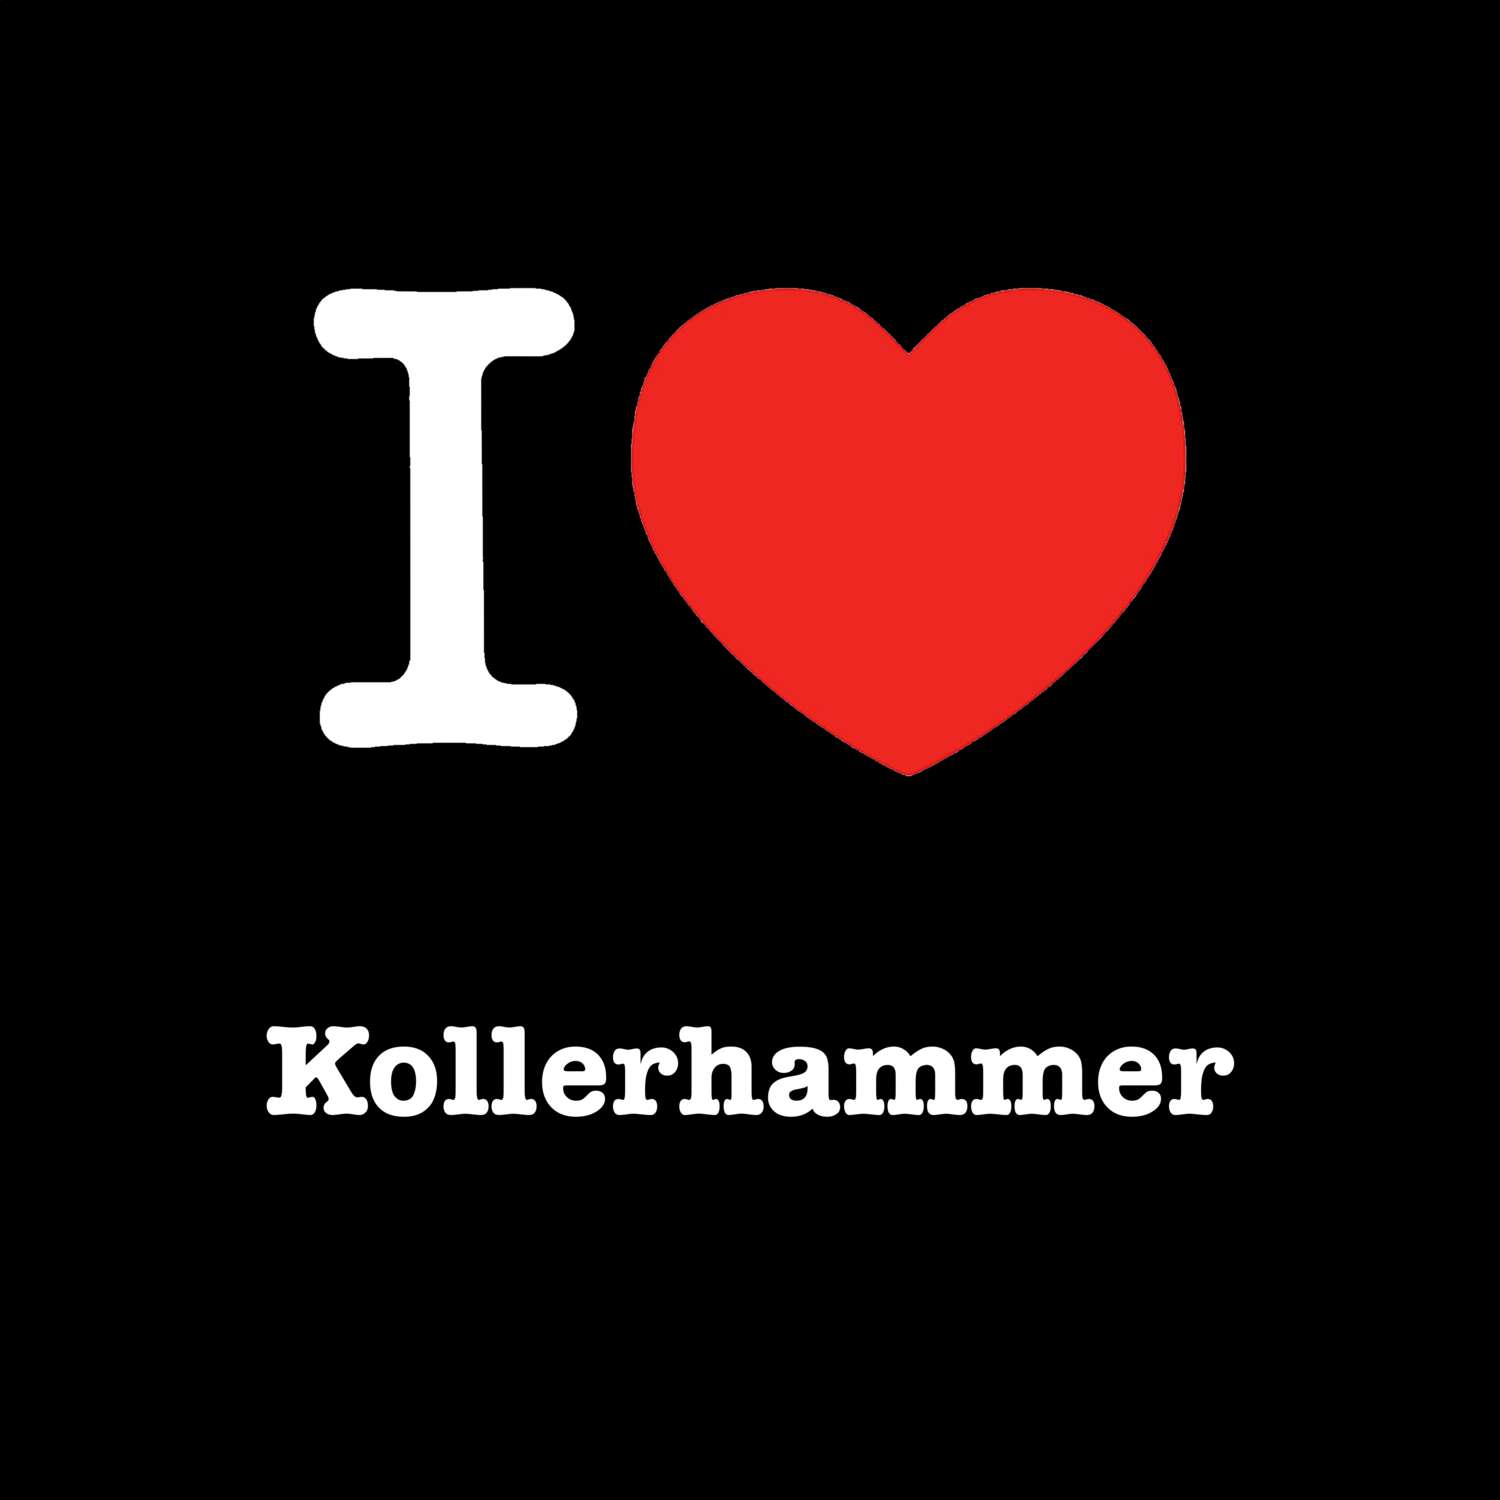 Kollerhammer T-Shirt »I love«